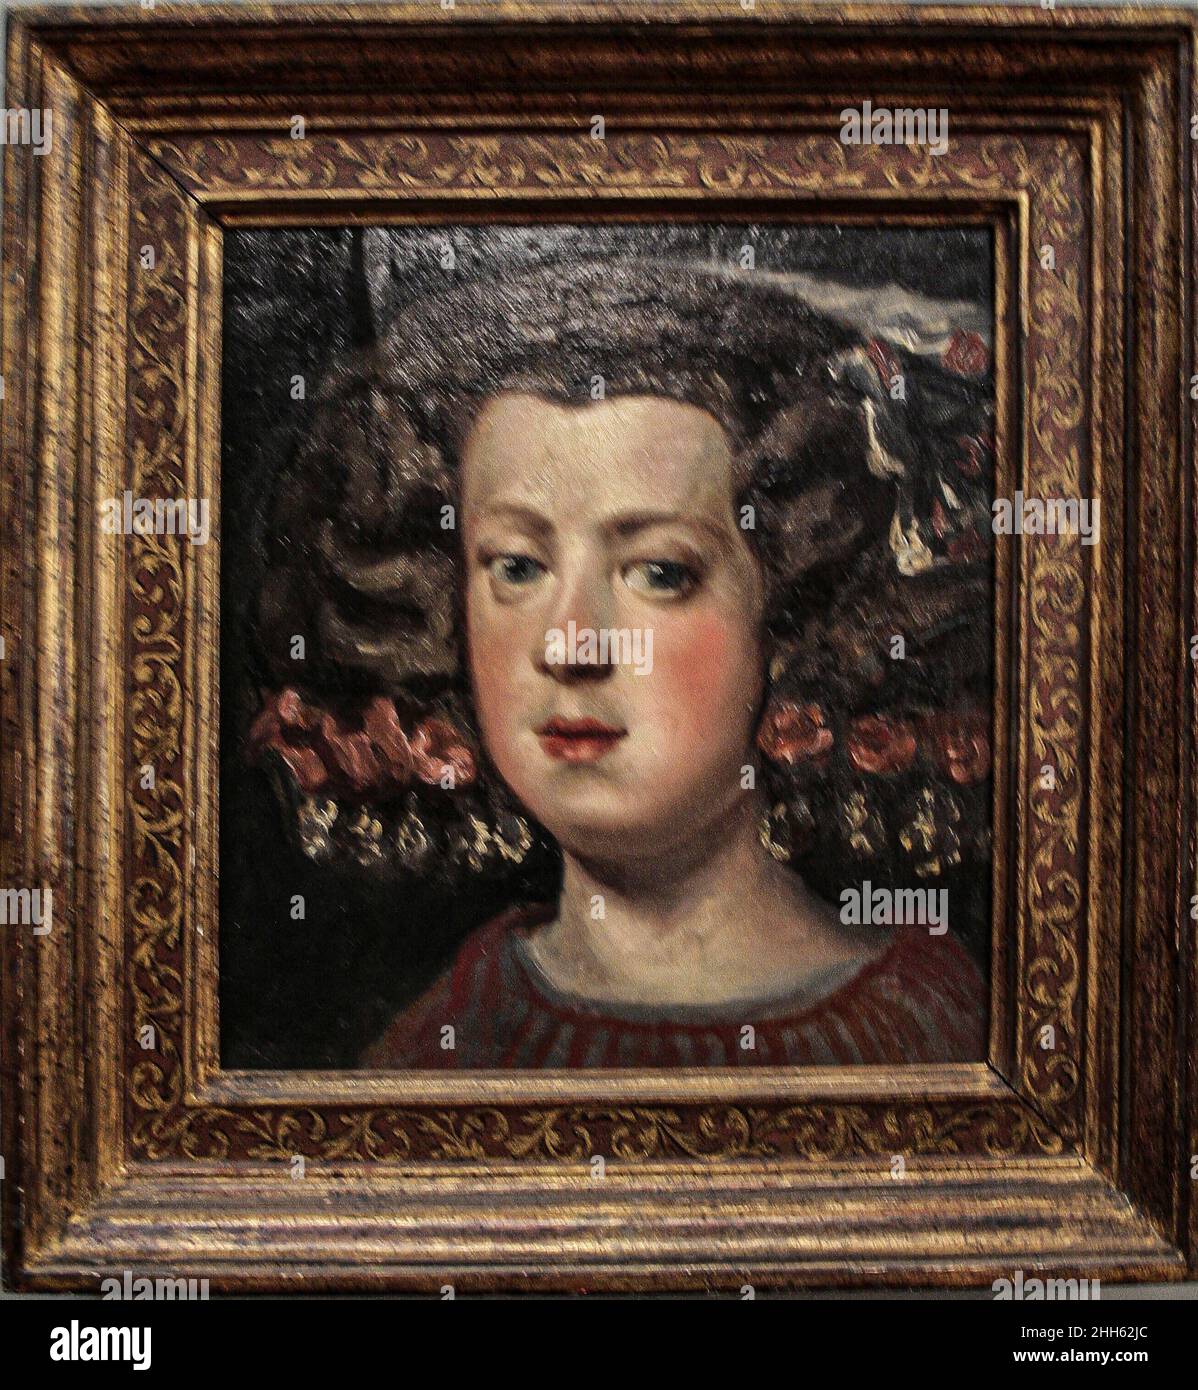 Zagabria, Croazia, Repubblica Hrvatska, Europa. Museo Mimara (Muzej Mimara). Diego Velazquez (1599-1660), l'Infanta Maria Teresa, 1654, olio su carta, steso su pannello. Foto Stock